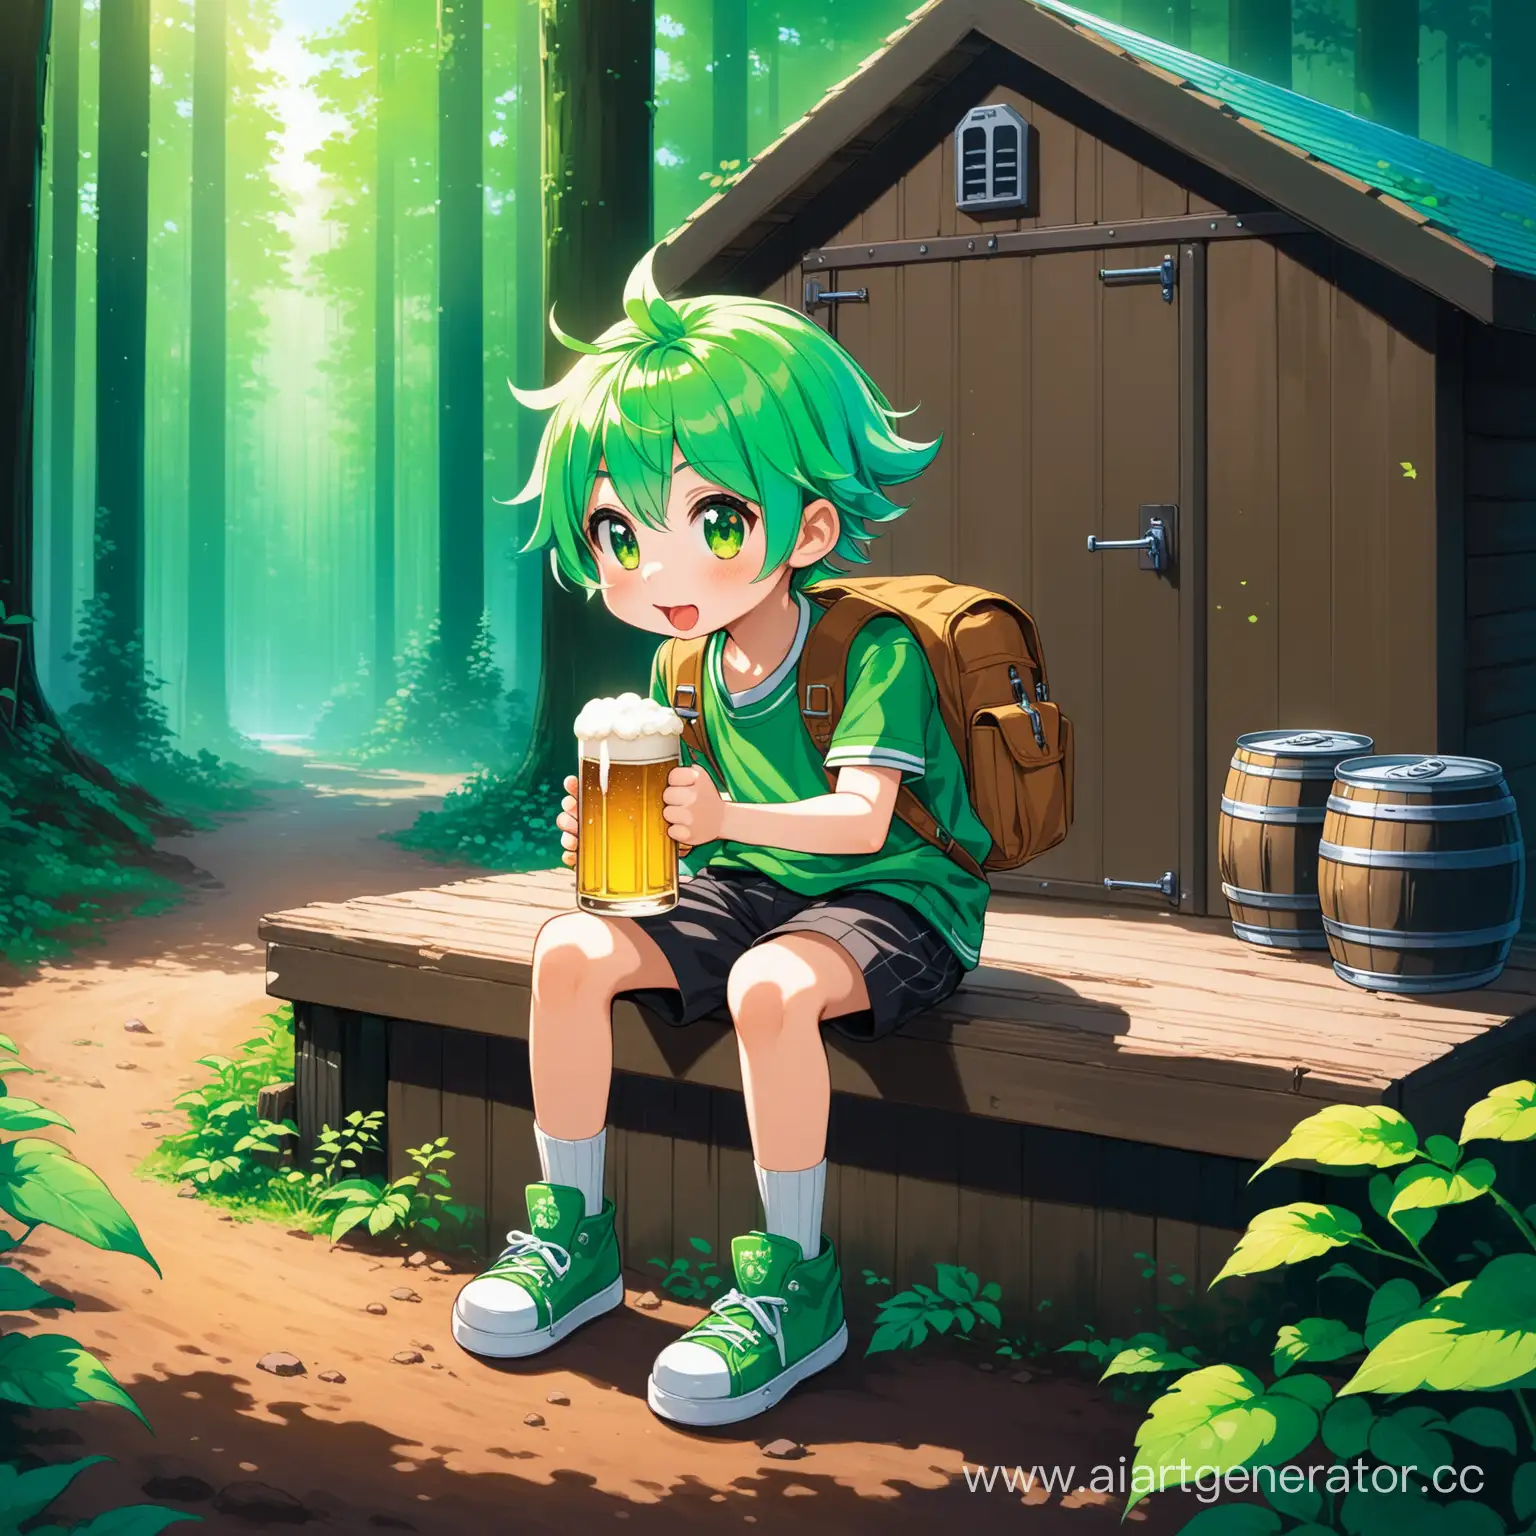 Zoomerstyled-Schoolkid-Drinking-Beer-near-Forest-Garage